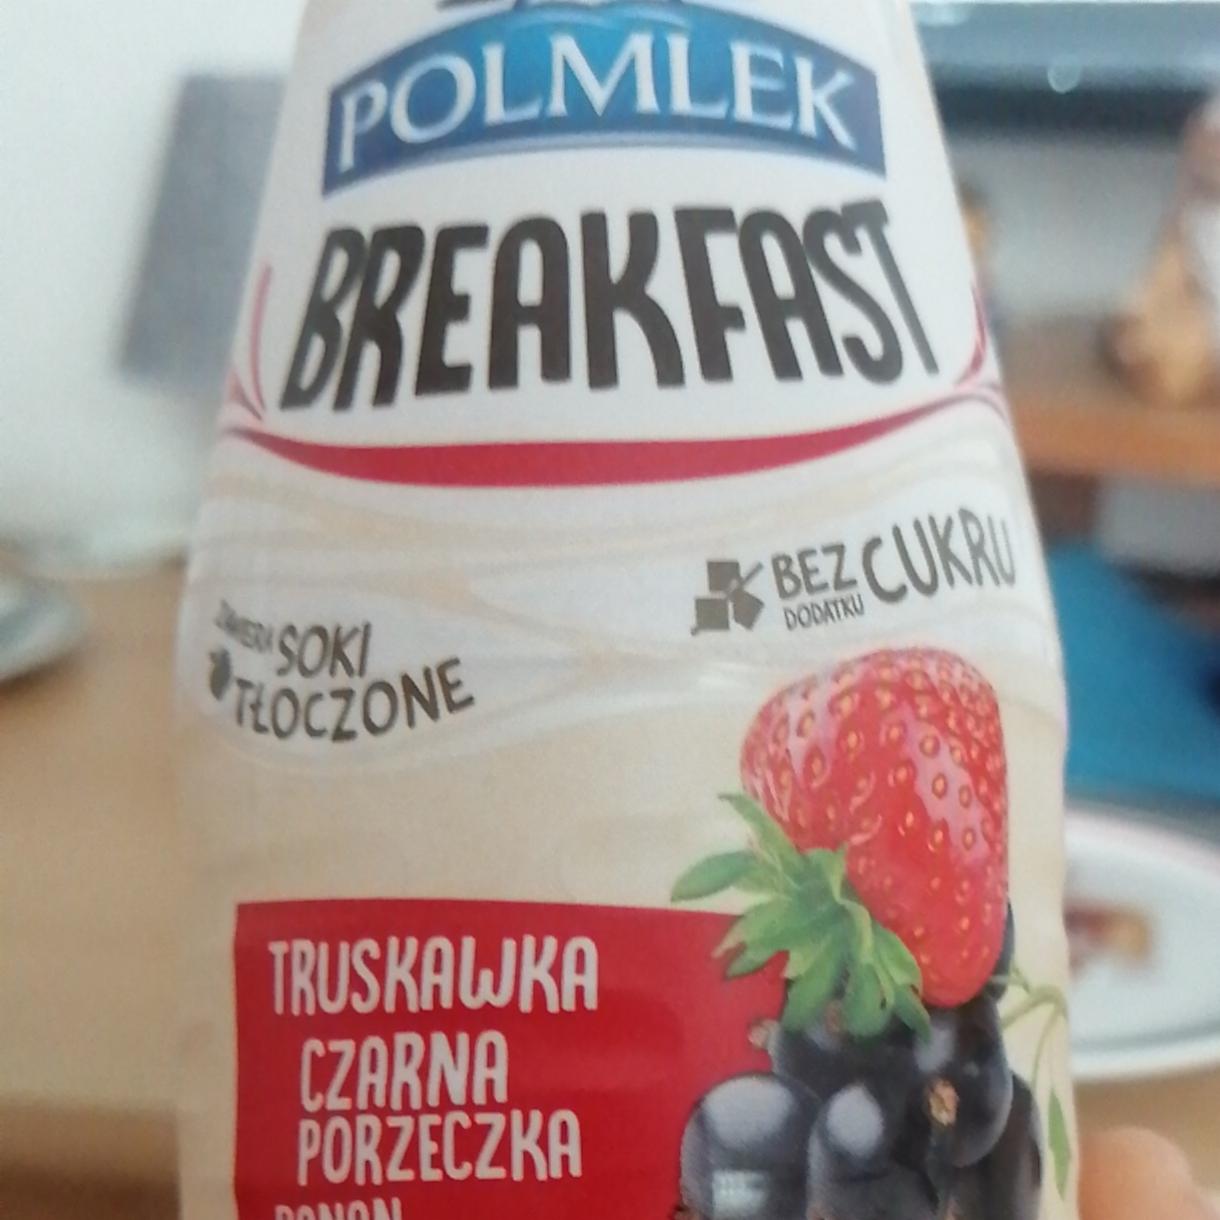 Zdjęcia - Polmlek Breakfast truskawka czarna porzeczka